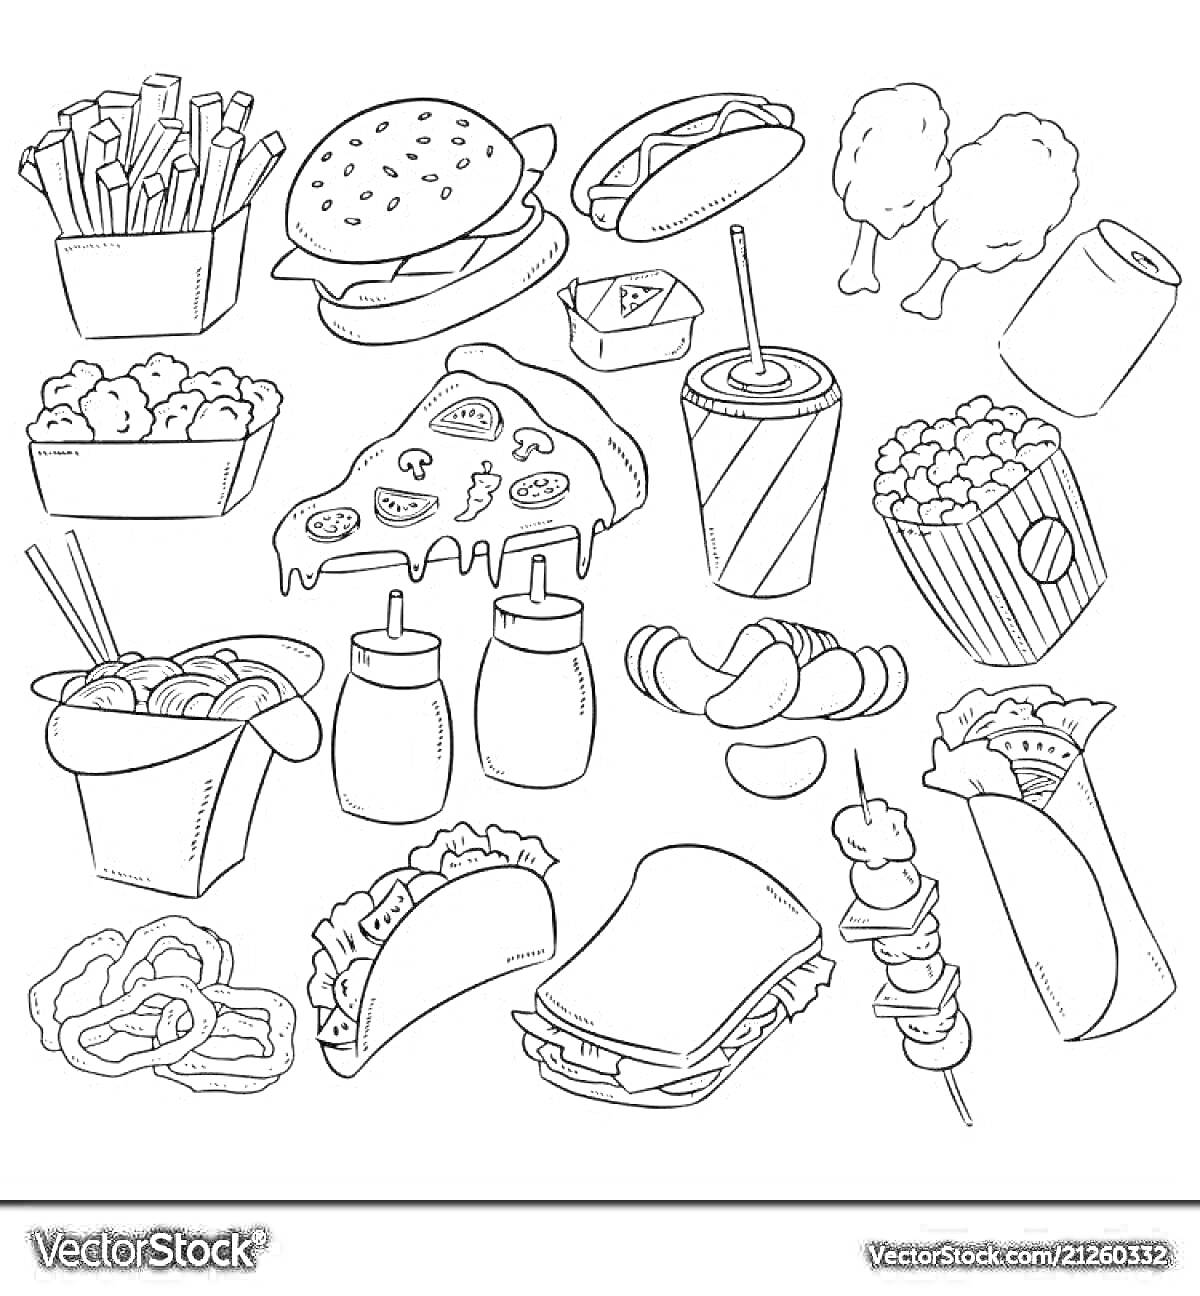 Раскраска Разнообразная еда: картофель фри, бургер, суши, куриные ножки, наггетсы, пицца, напиток в стакане с трубочкой, попкорн, лапша в коробке, бутылки соусом, чипсы, роллы, крендели, тако, сэндвич, шашлык, буррито